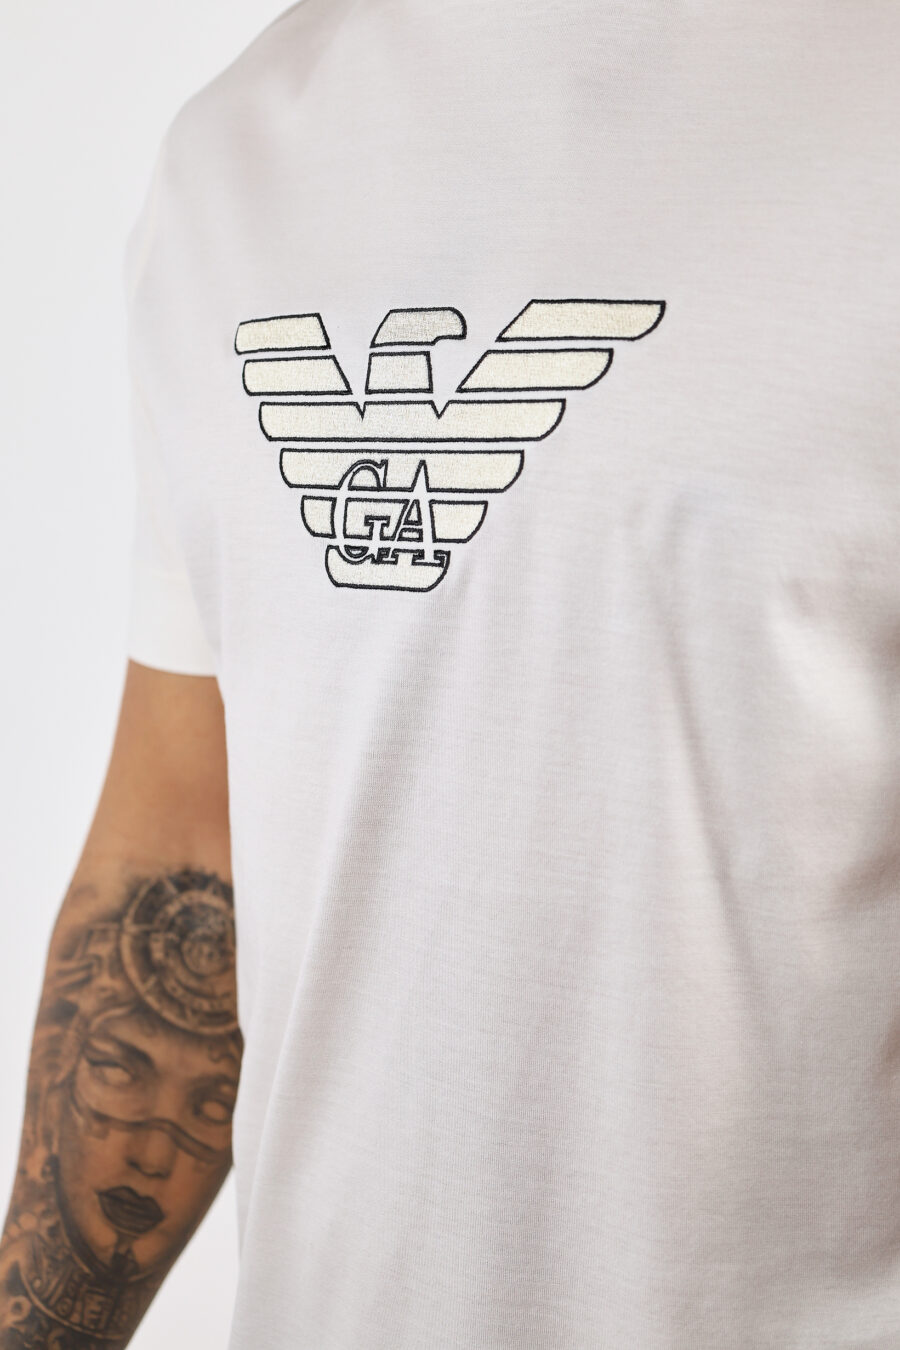 Cremefarbenes T-Shirt mit zentriertem Adler-Maxilogo - BLS Fashion 77